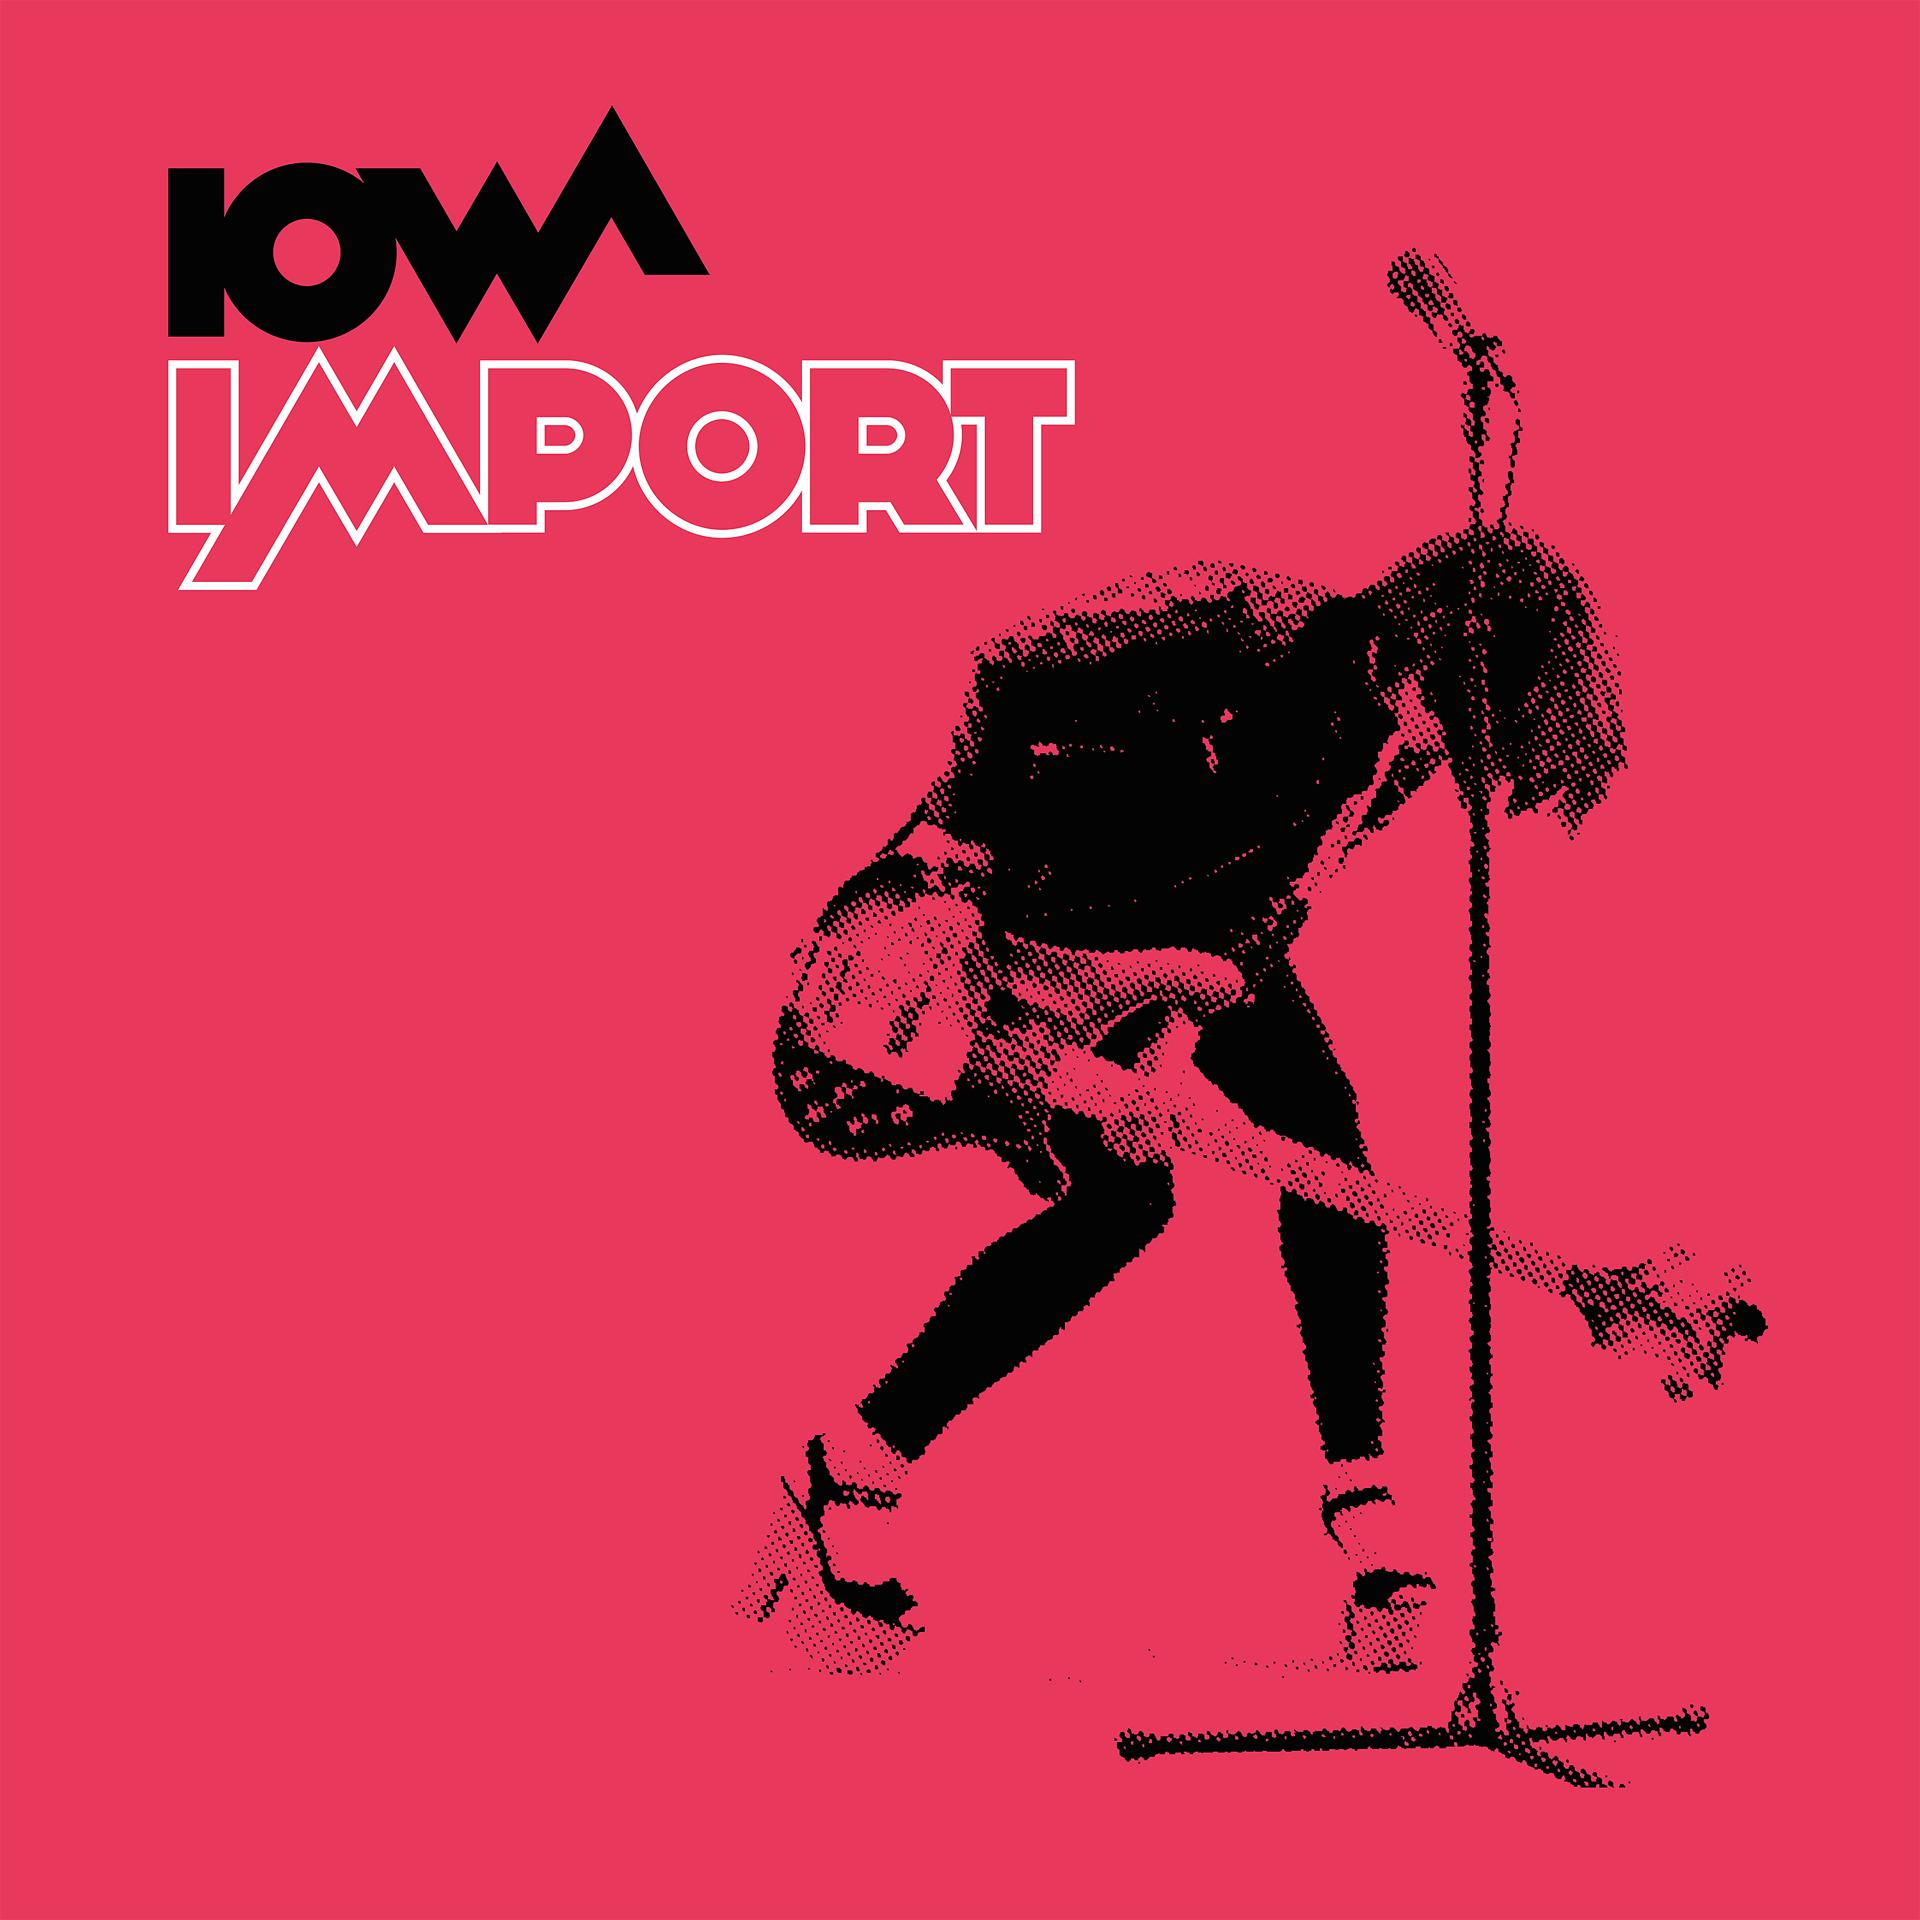 Iowa обложка. Обложка трека Iowa - 140. Iowa "Import". Современные обложки альбомов. Лова альбомы